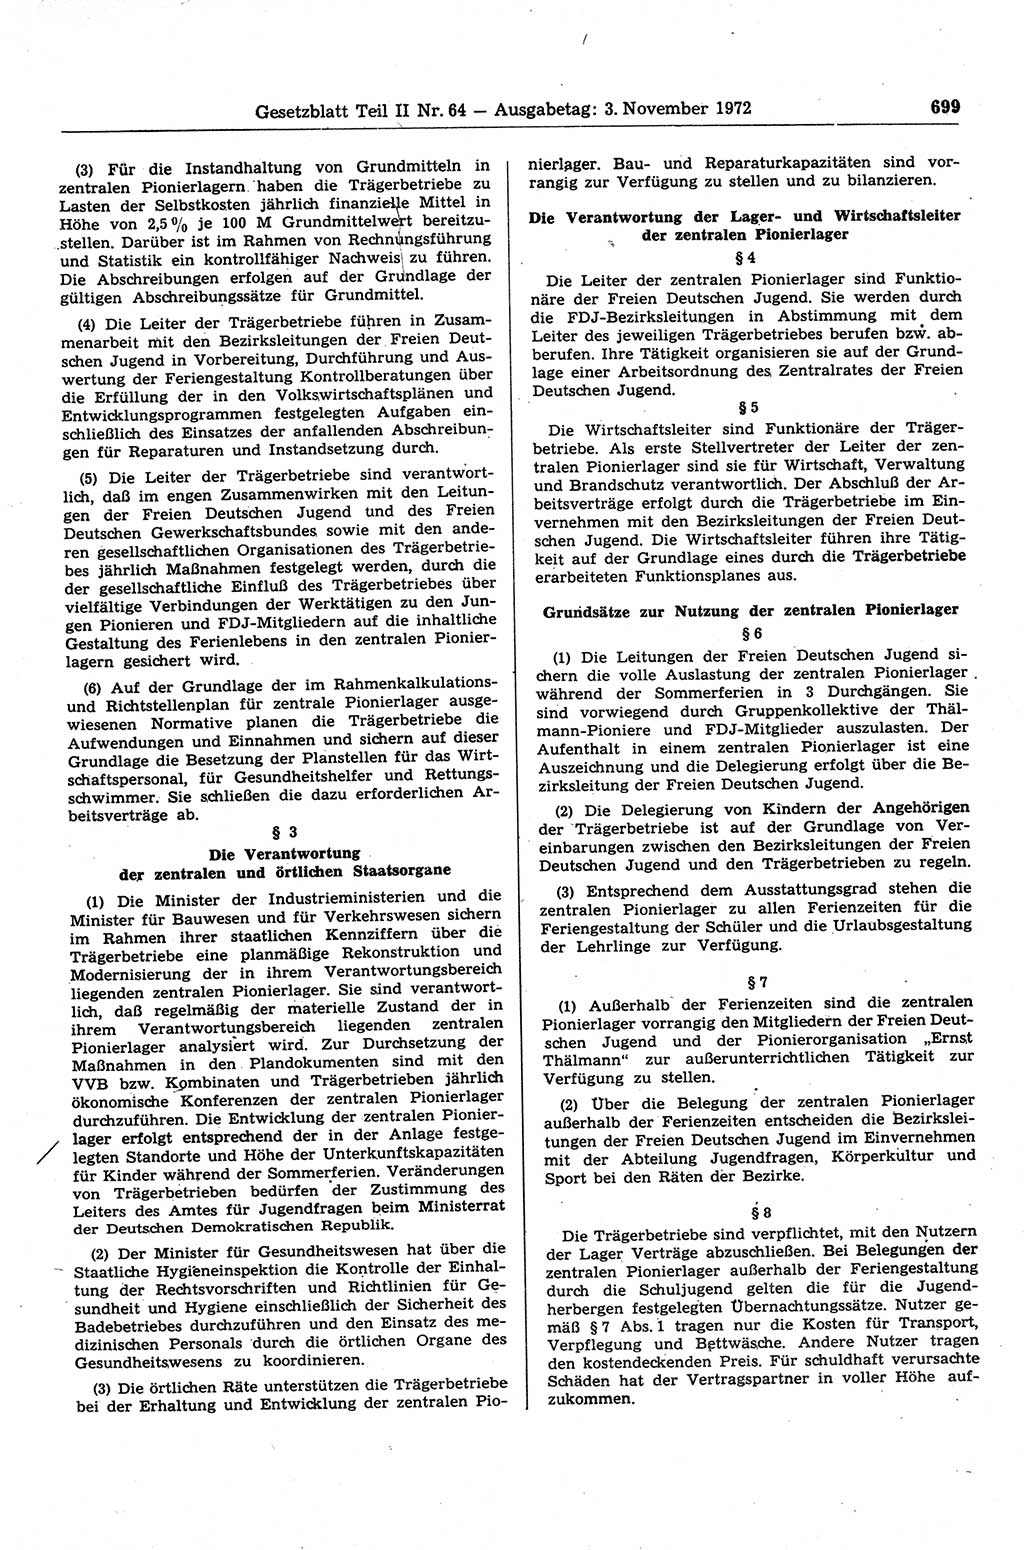 Gesetzblatt (GBl.) der Deutschen Demokratischen Republik (DDR) Teil ⅠⅠ 1972, Seite 699 (GBl. DDR ⅠⅠ 1972, S. 699)